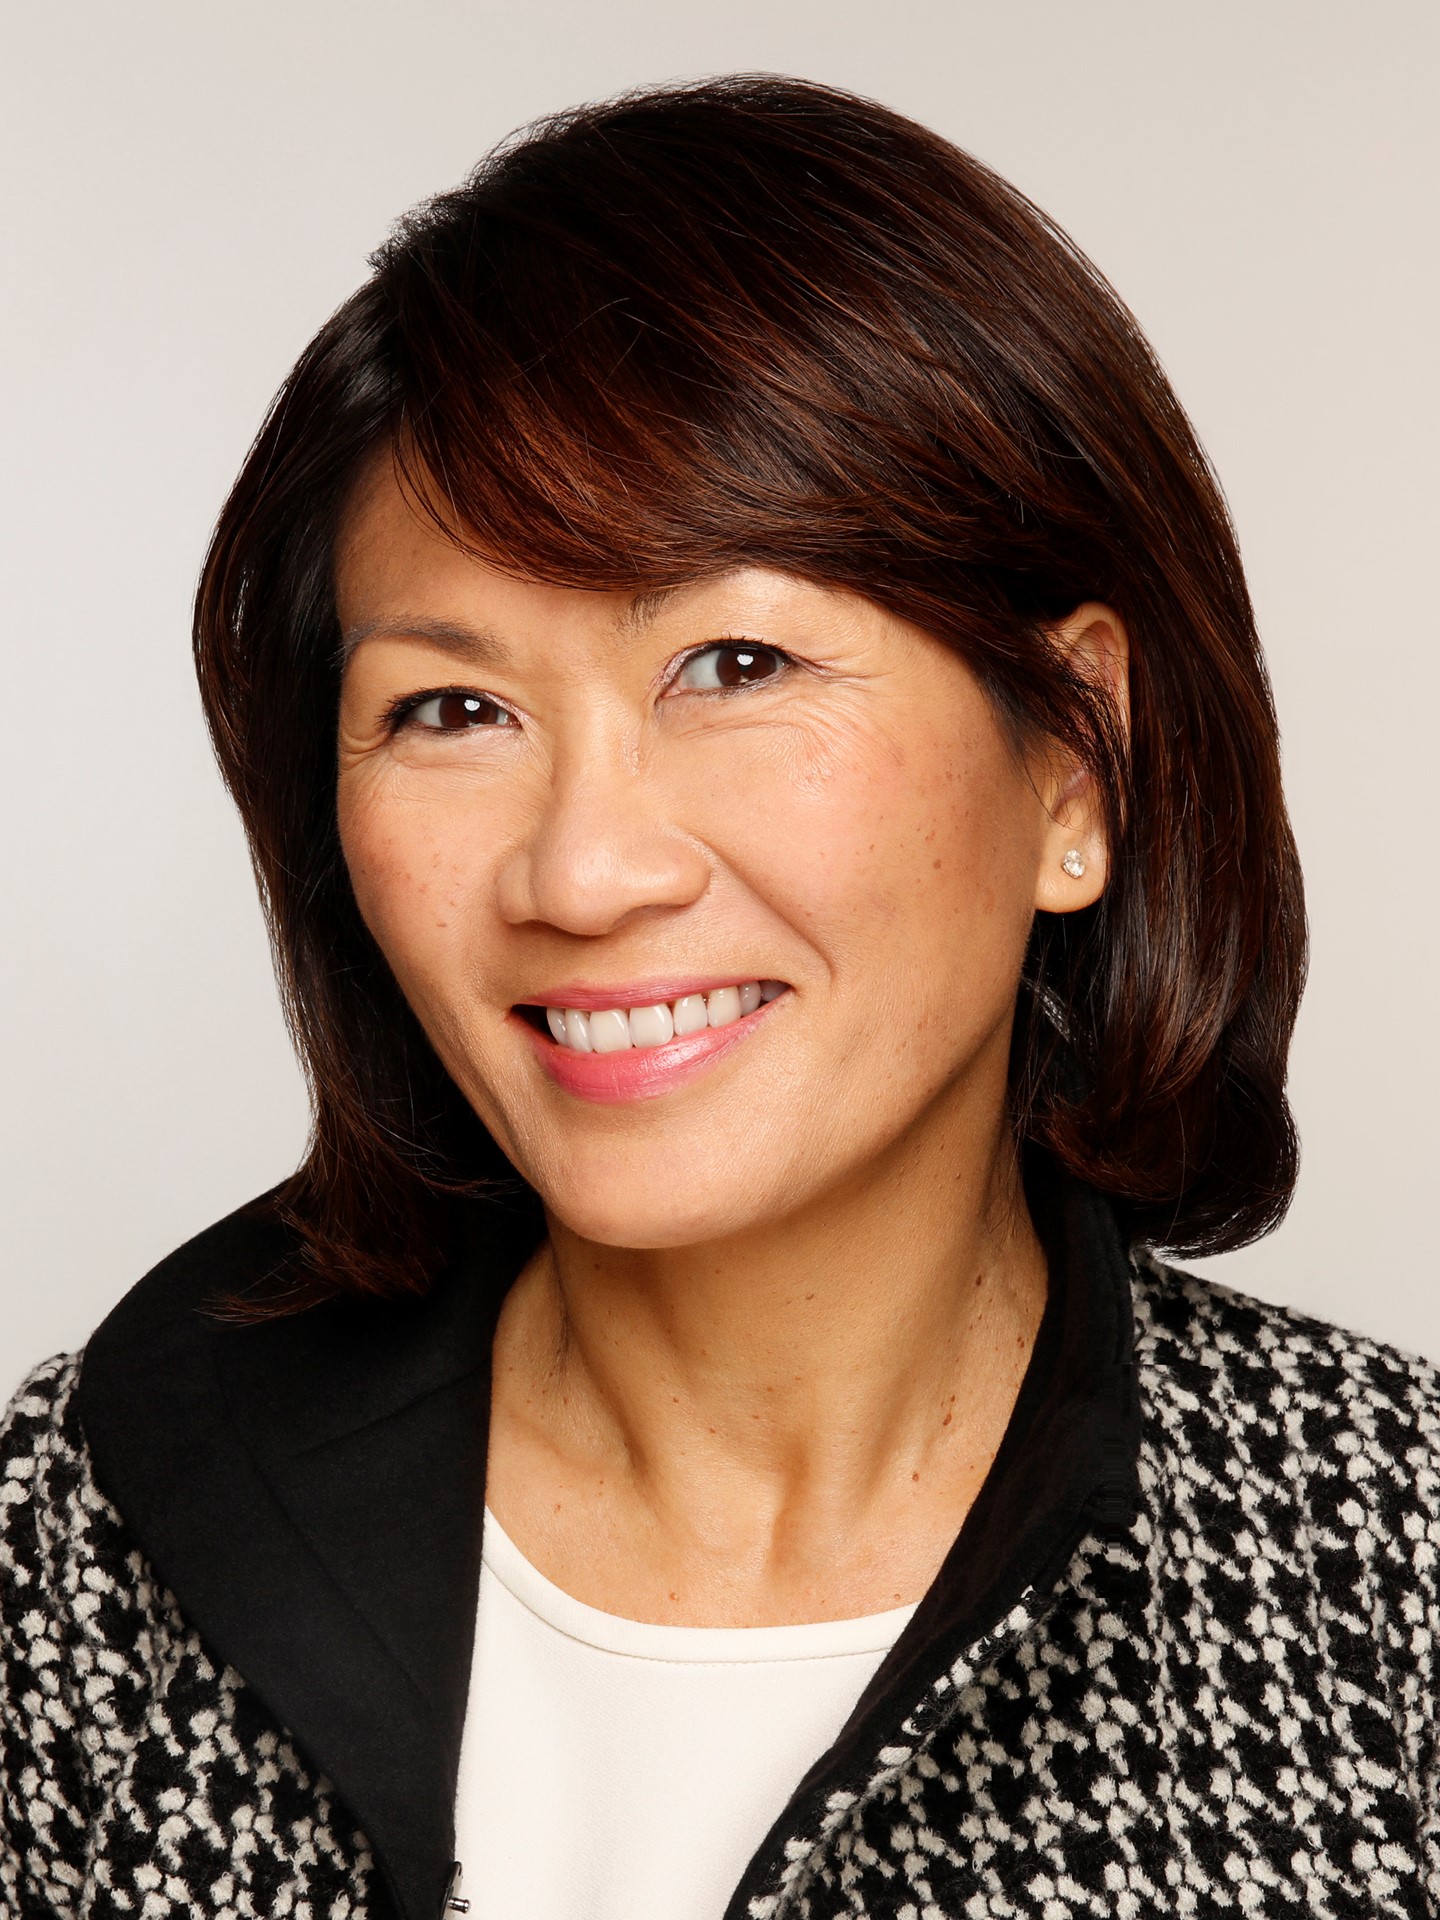 Diana Tan